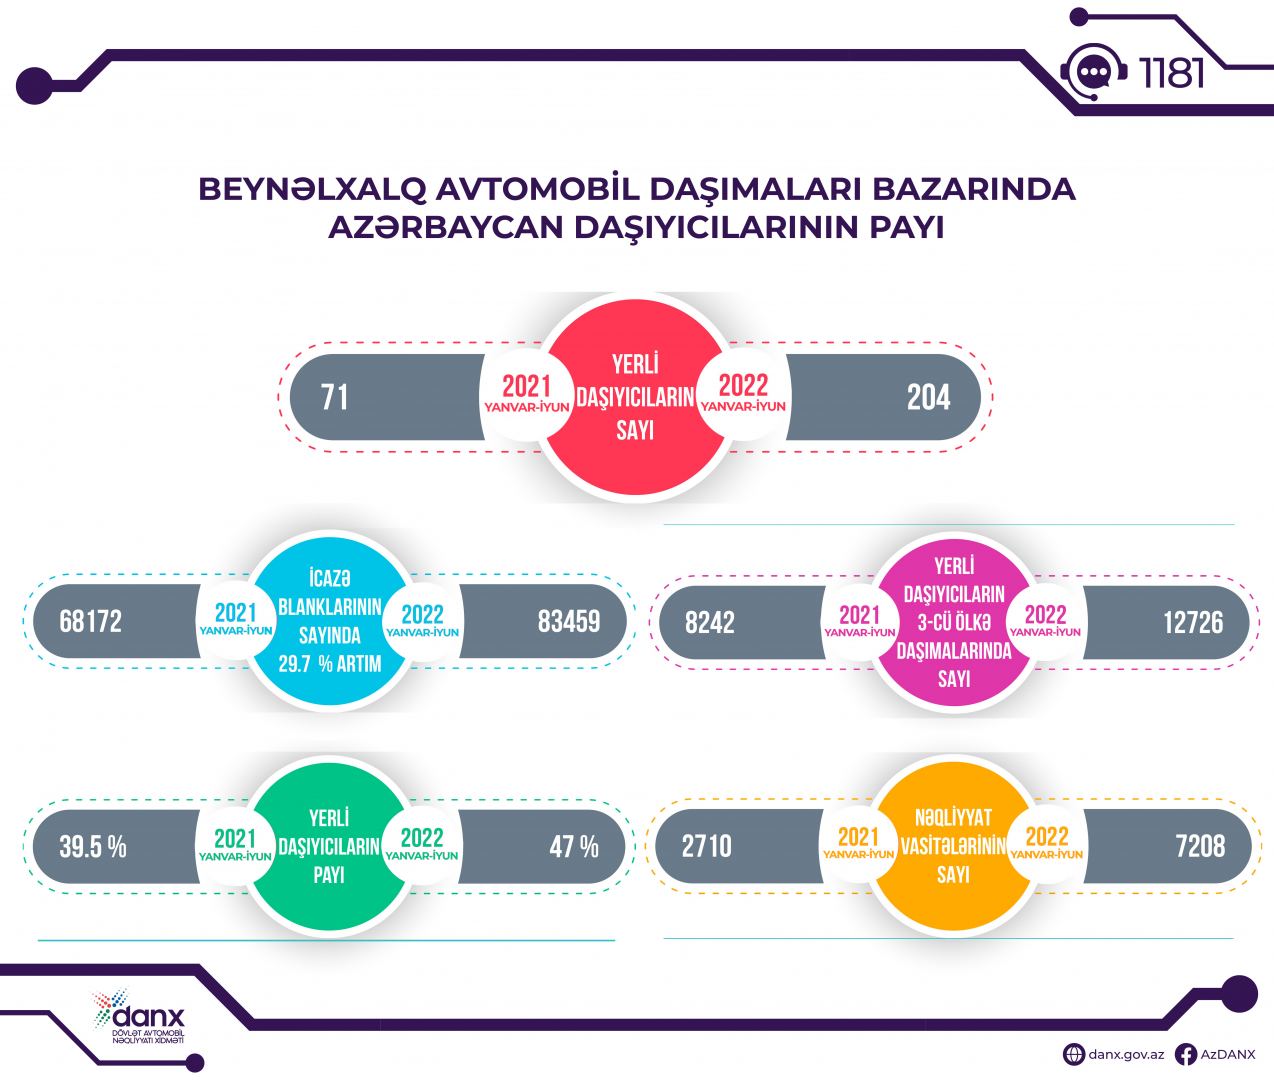 Beynəlxalq avtomobil daşımaları bazarında Azərbaycan daşıyıcılarının payı artıb